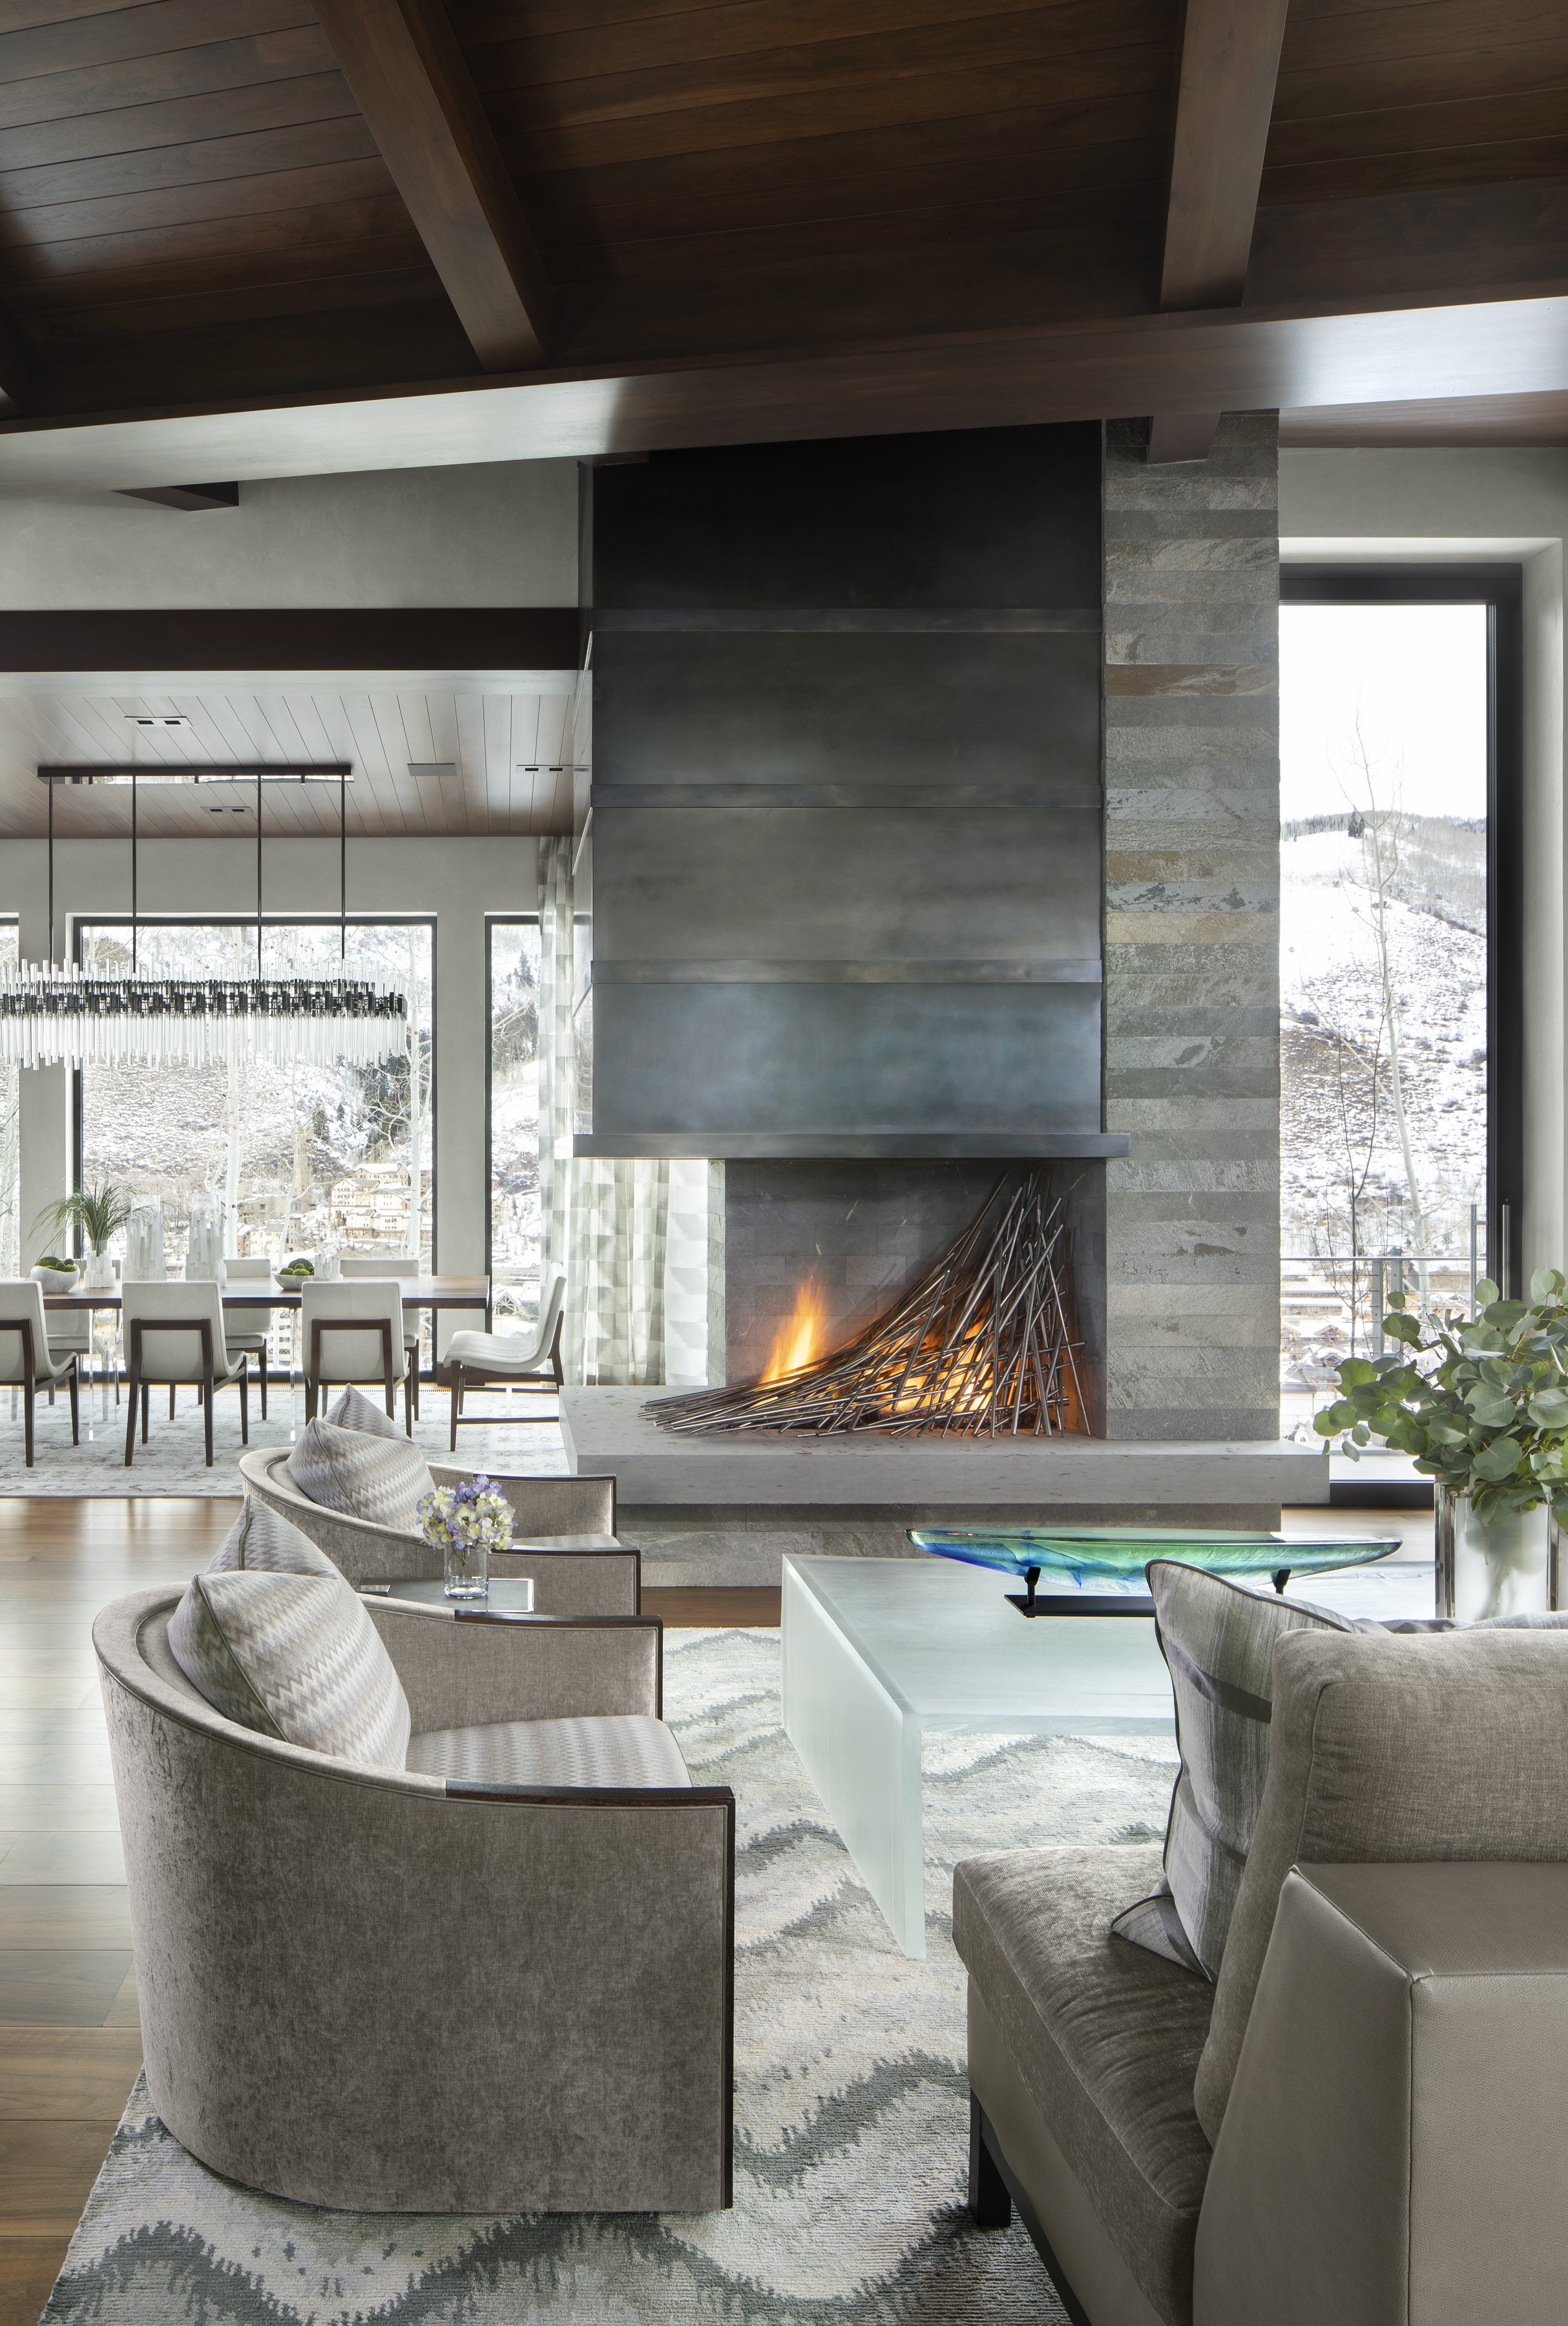 3-modern-fireplace-natural-light-interiordesigners-vail.jpg